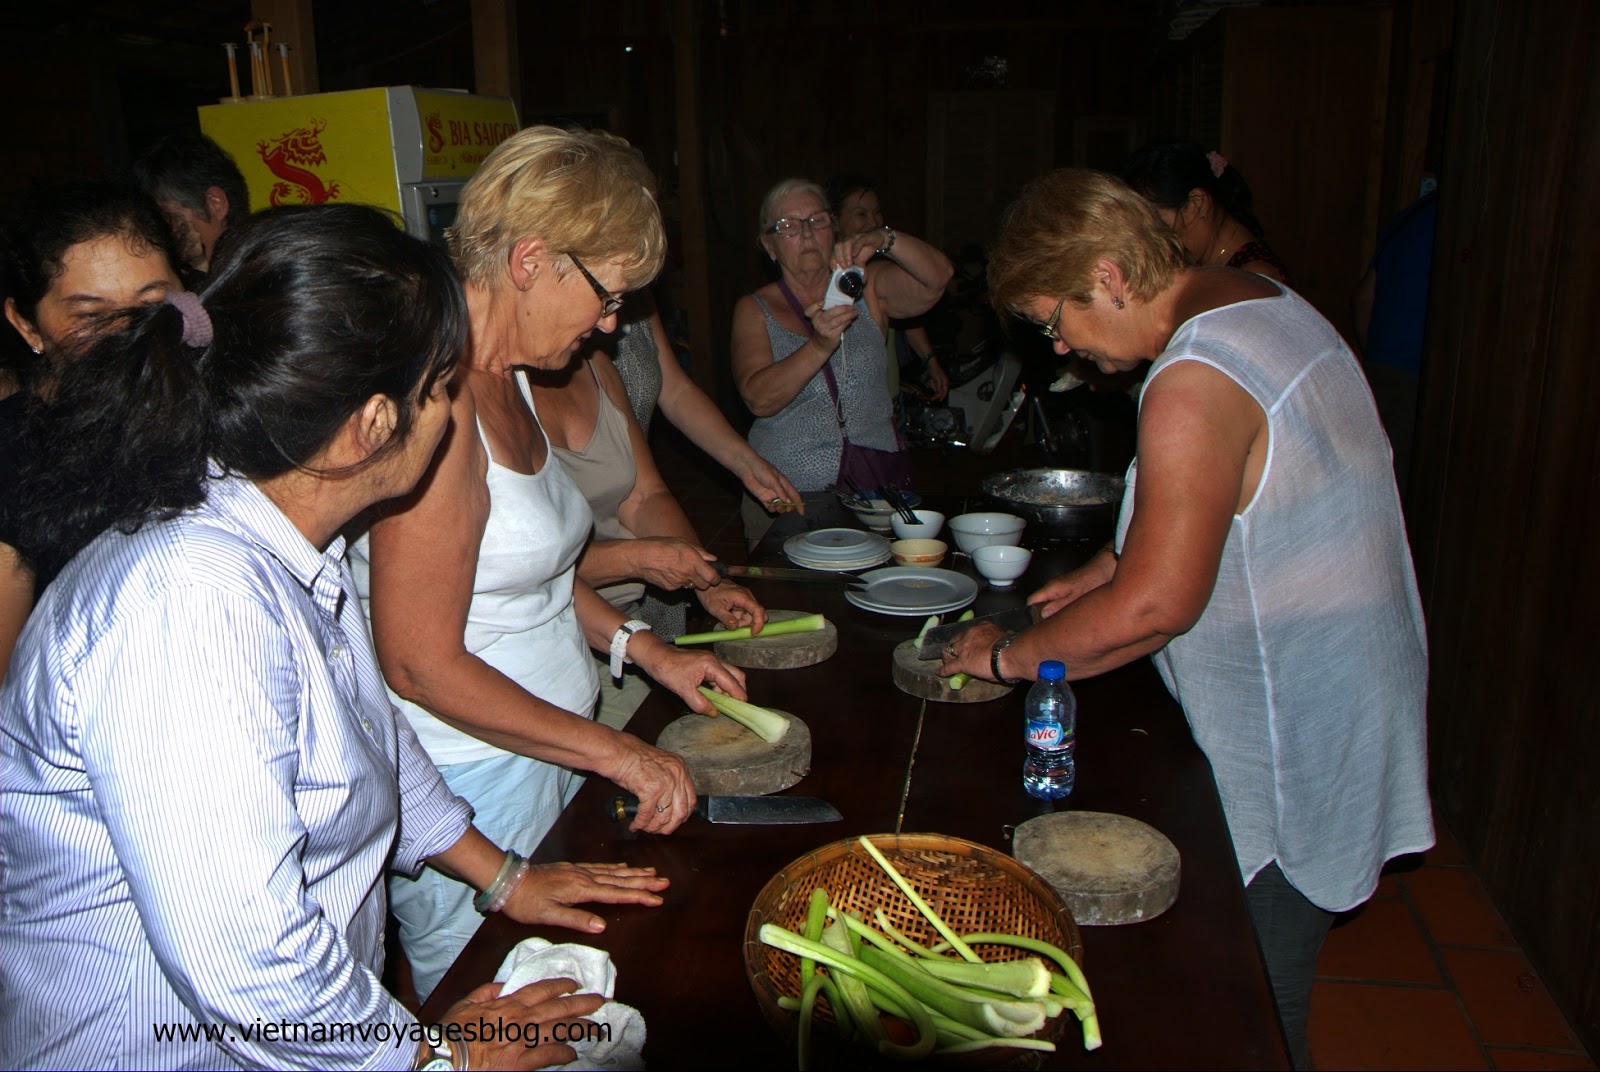 Du lịch học nấu ăn, cách hiệu quả nhất để giao lưu văn hóa ẩm thực